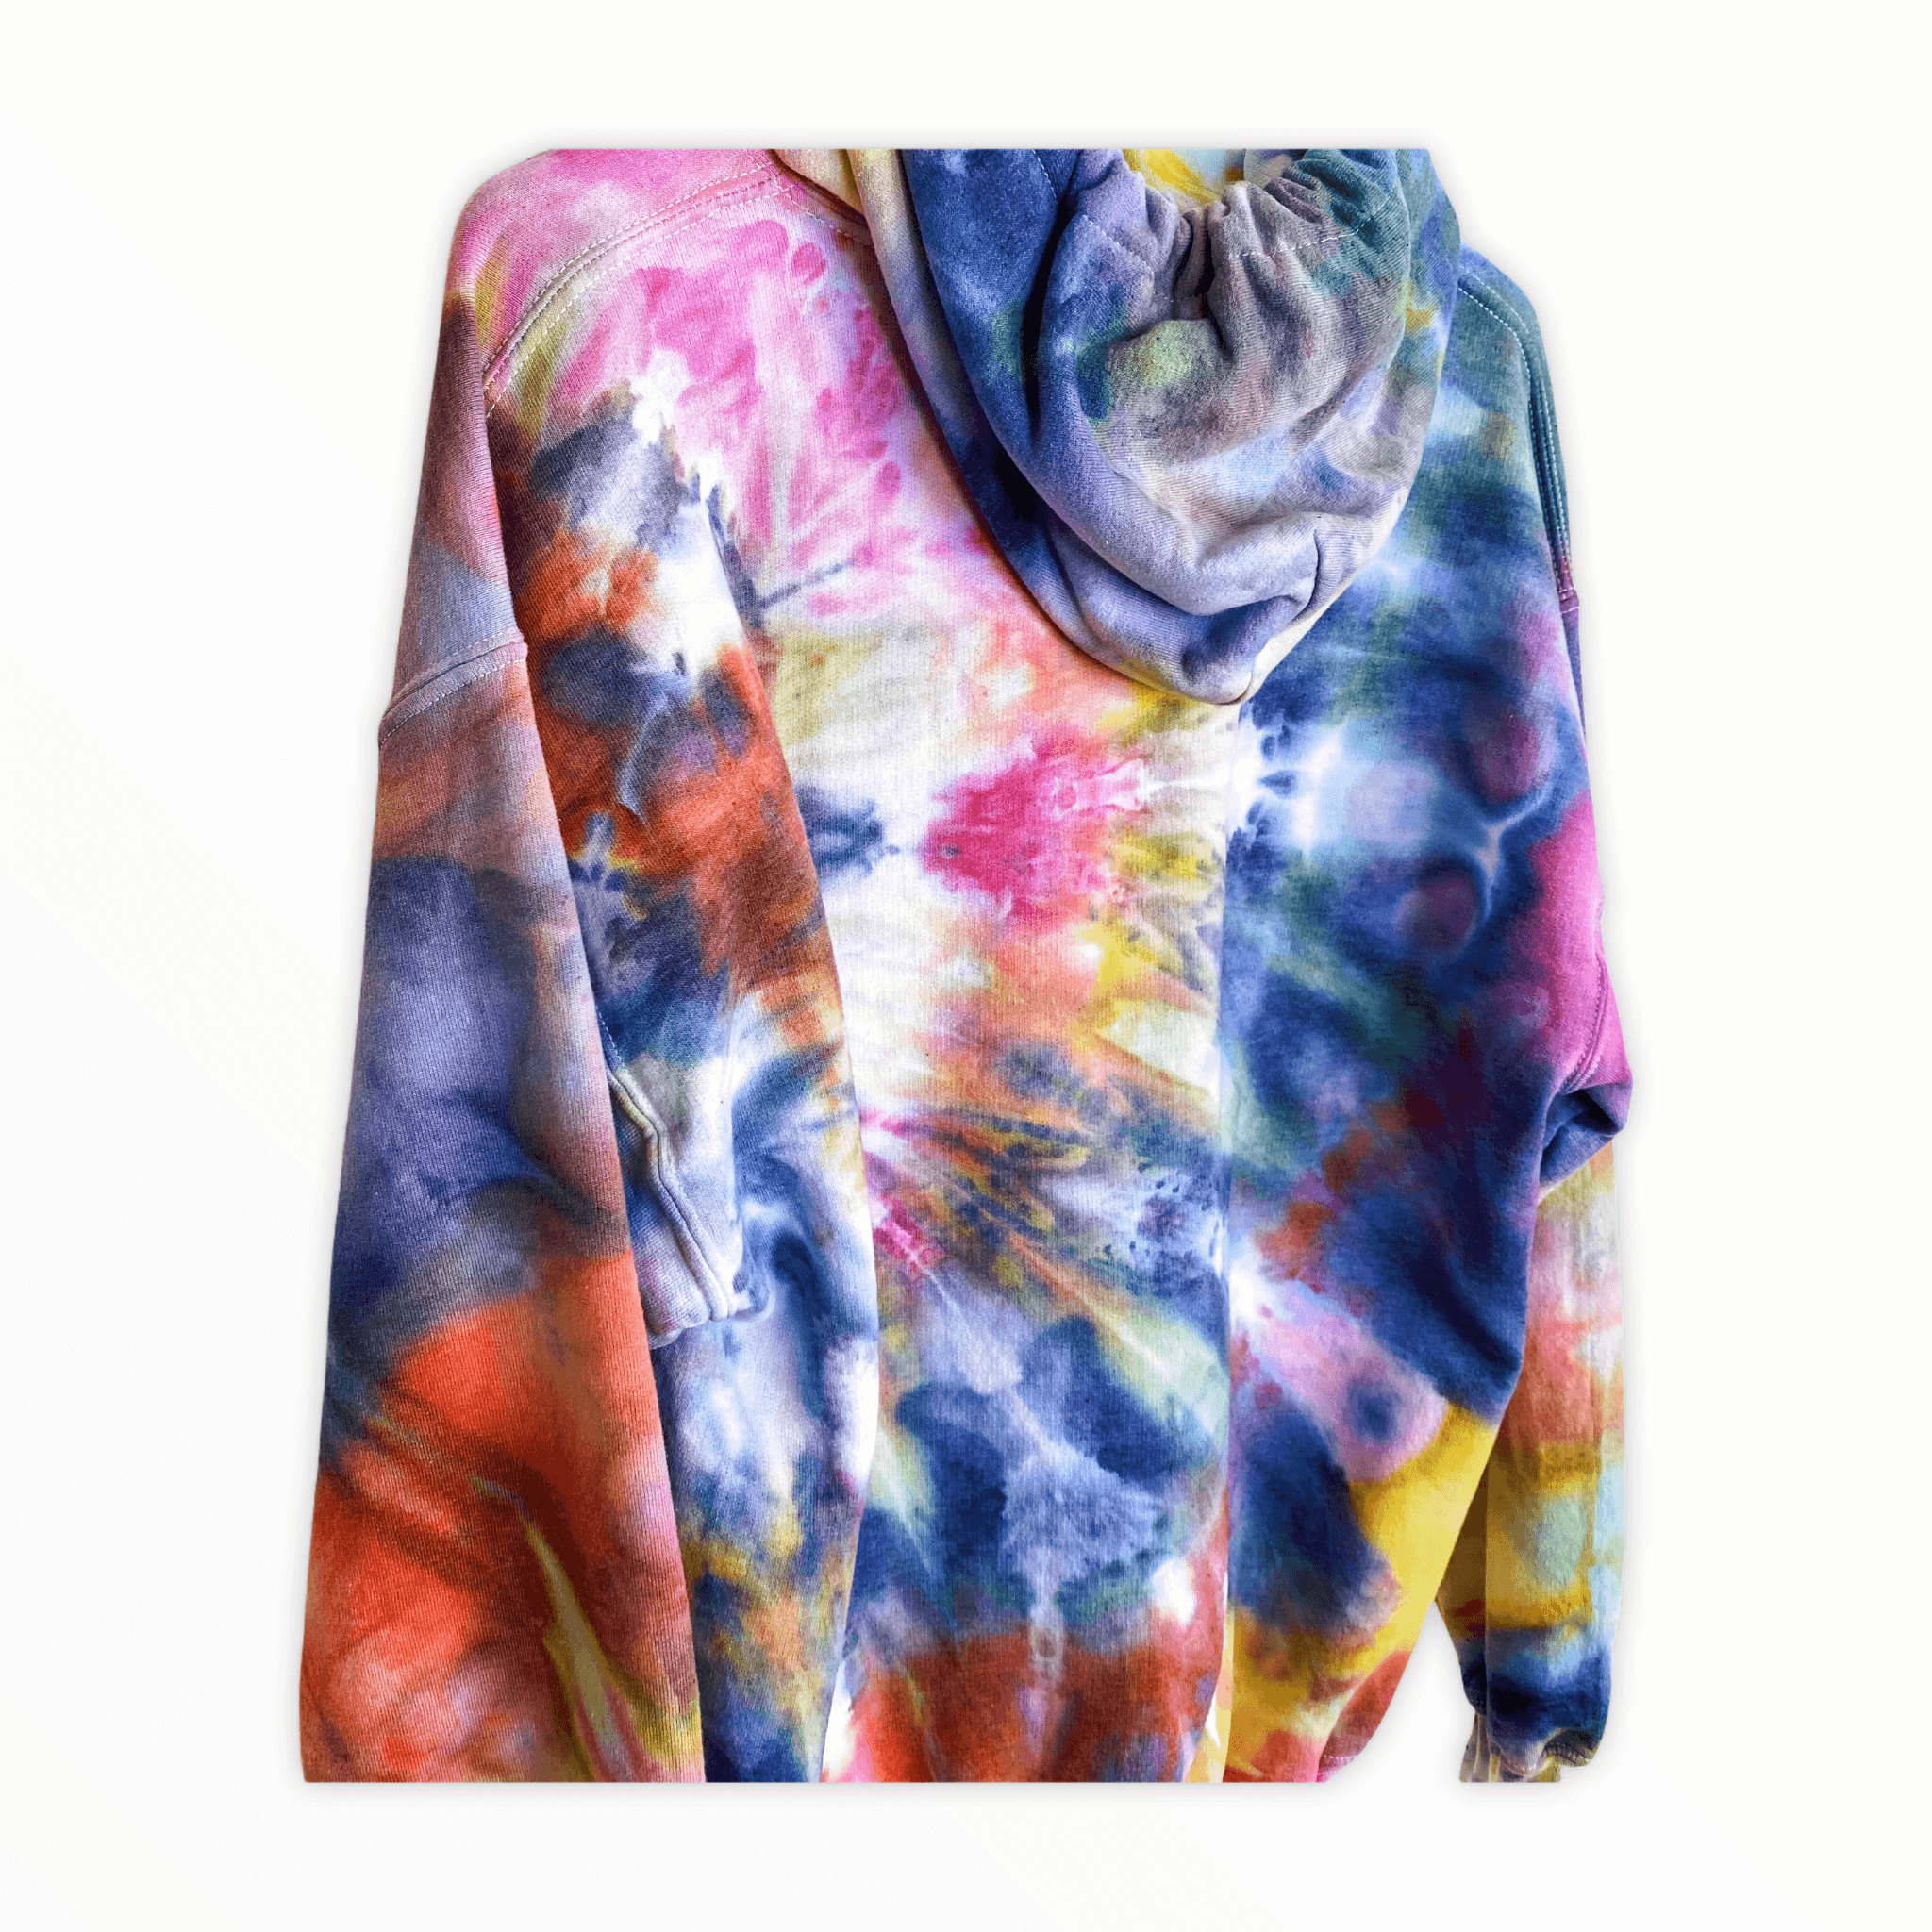 Tie-dye sweatshirt from Live & Let Dye by Andrea Carneiro